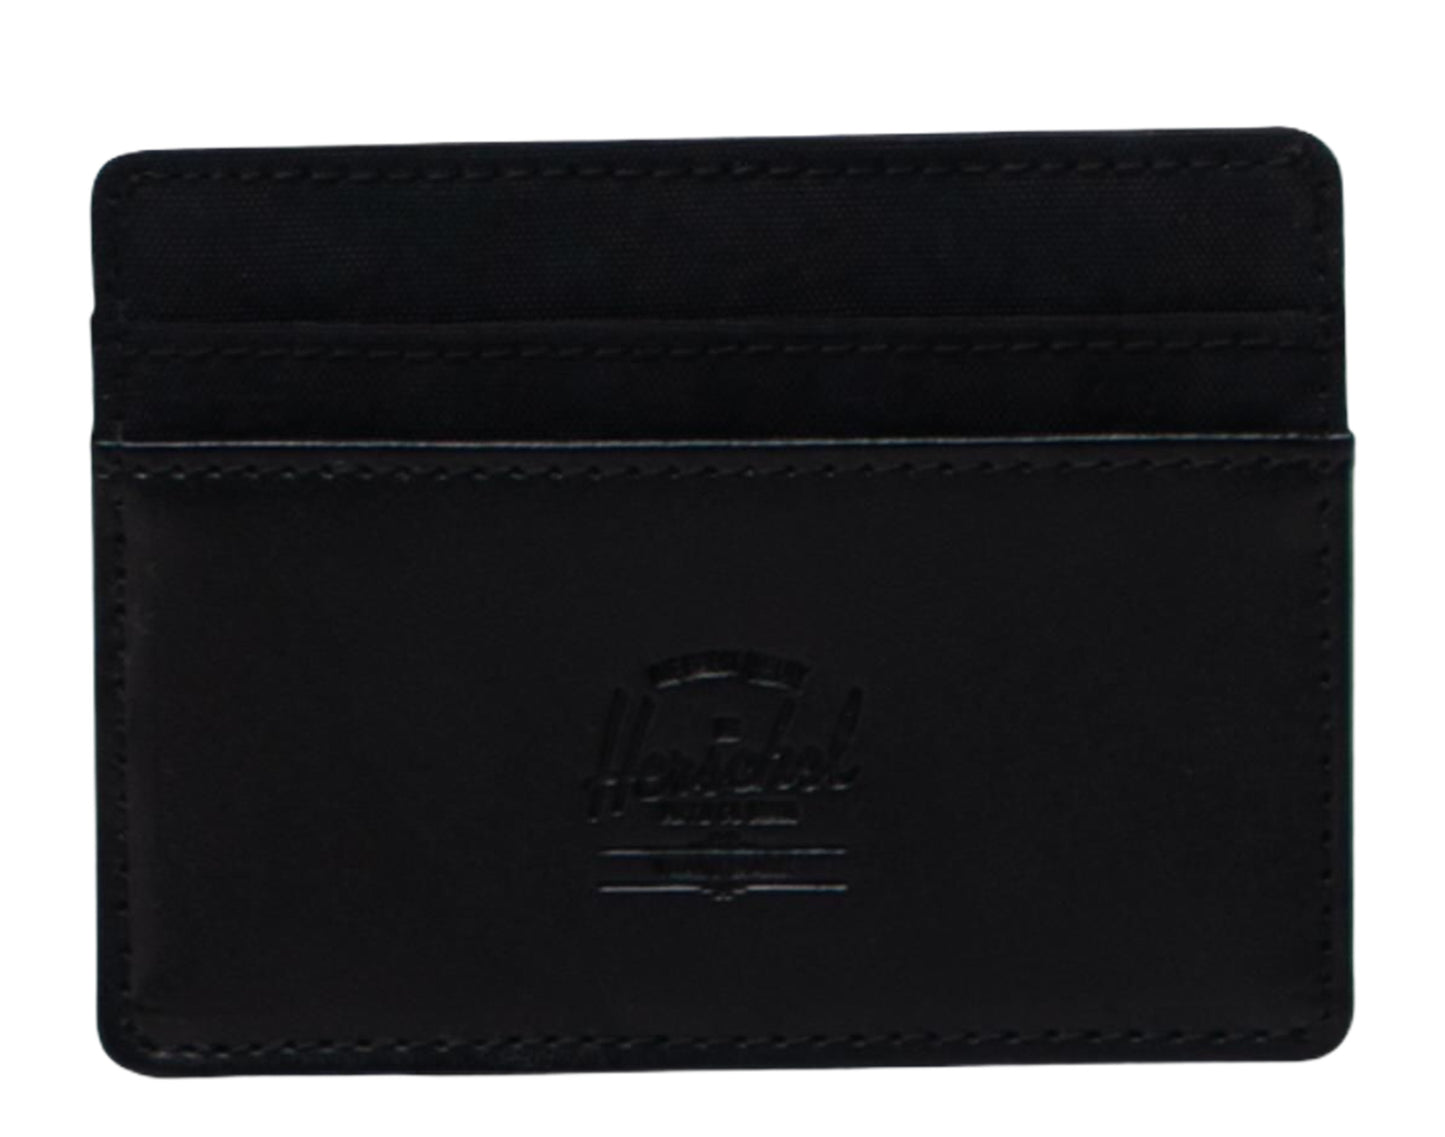 Herschel Supply Co. Leather Charlie RFID Wallet